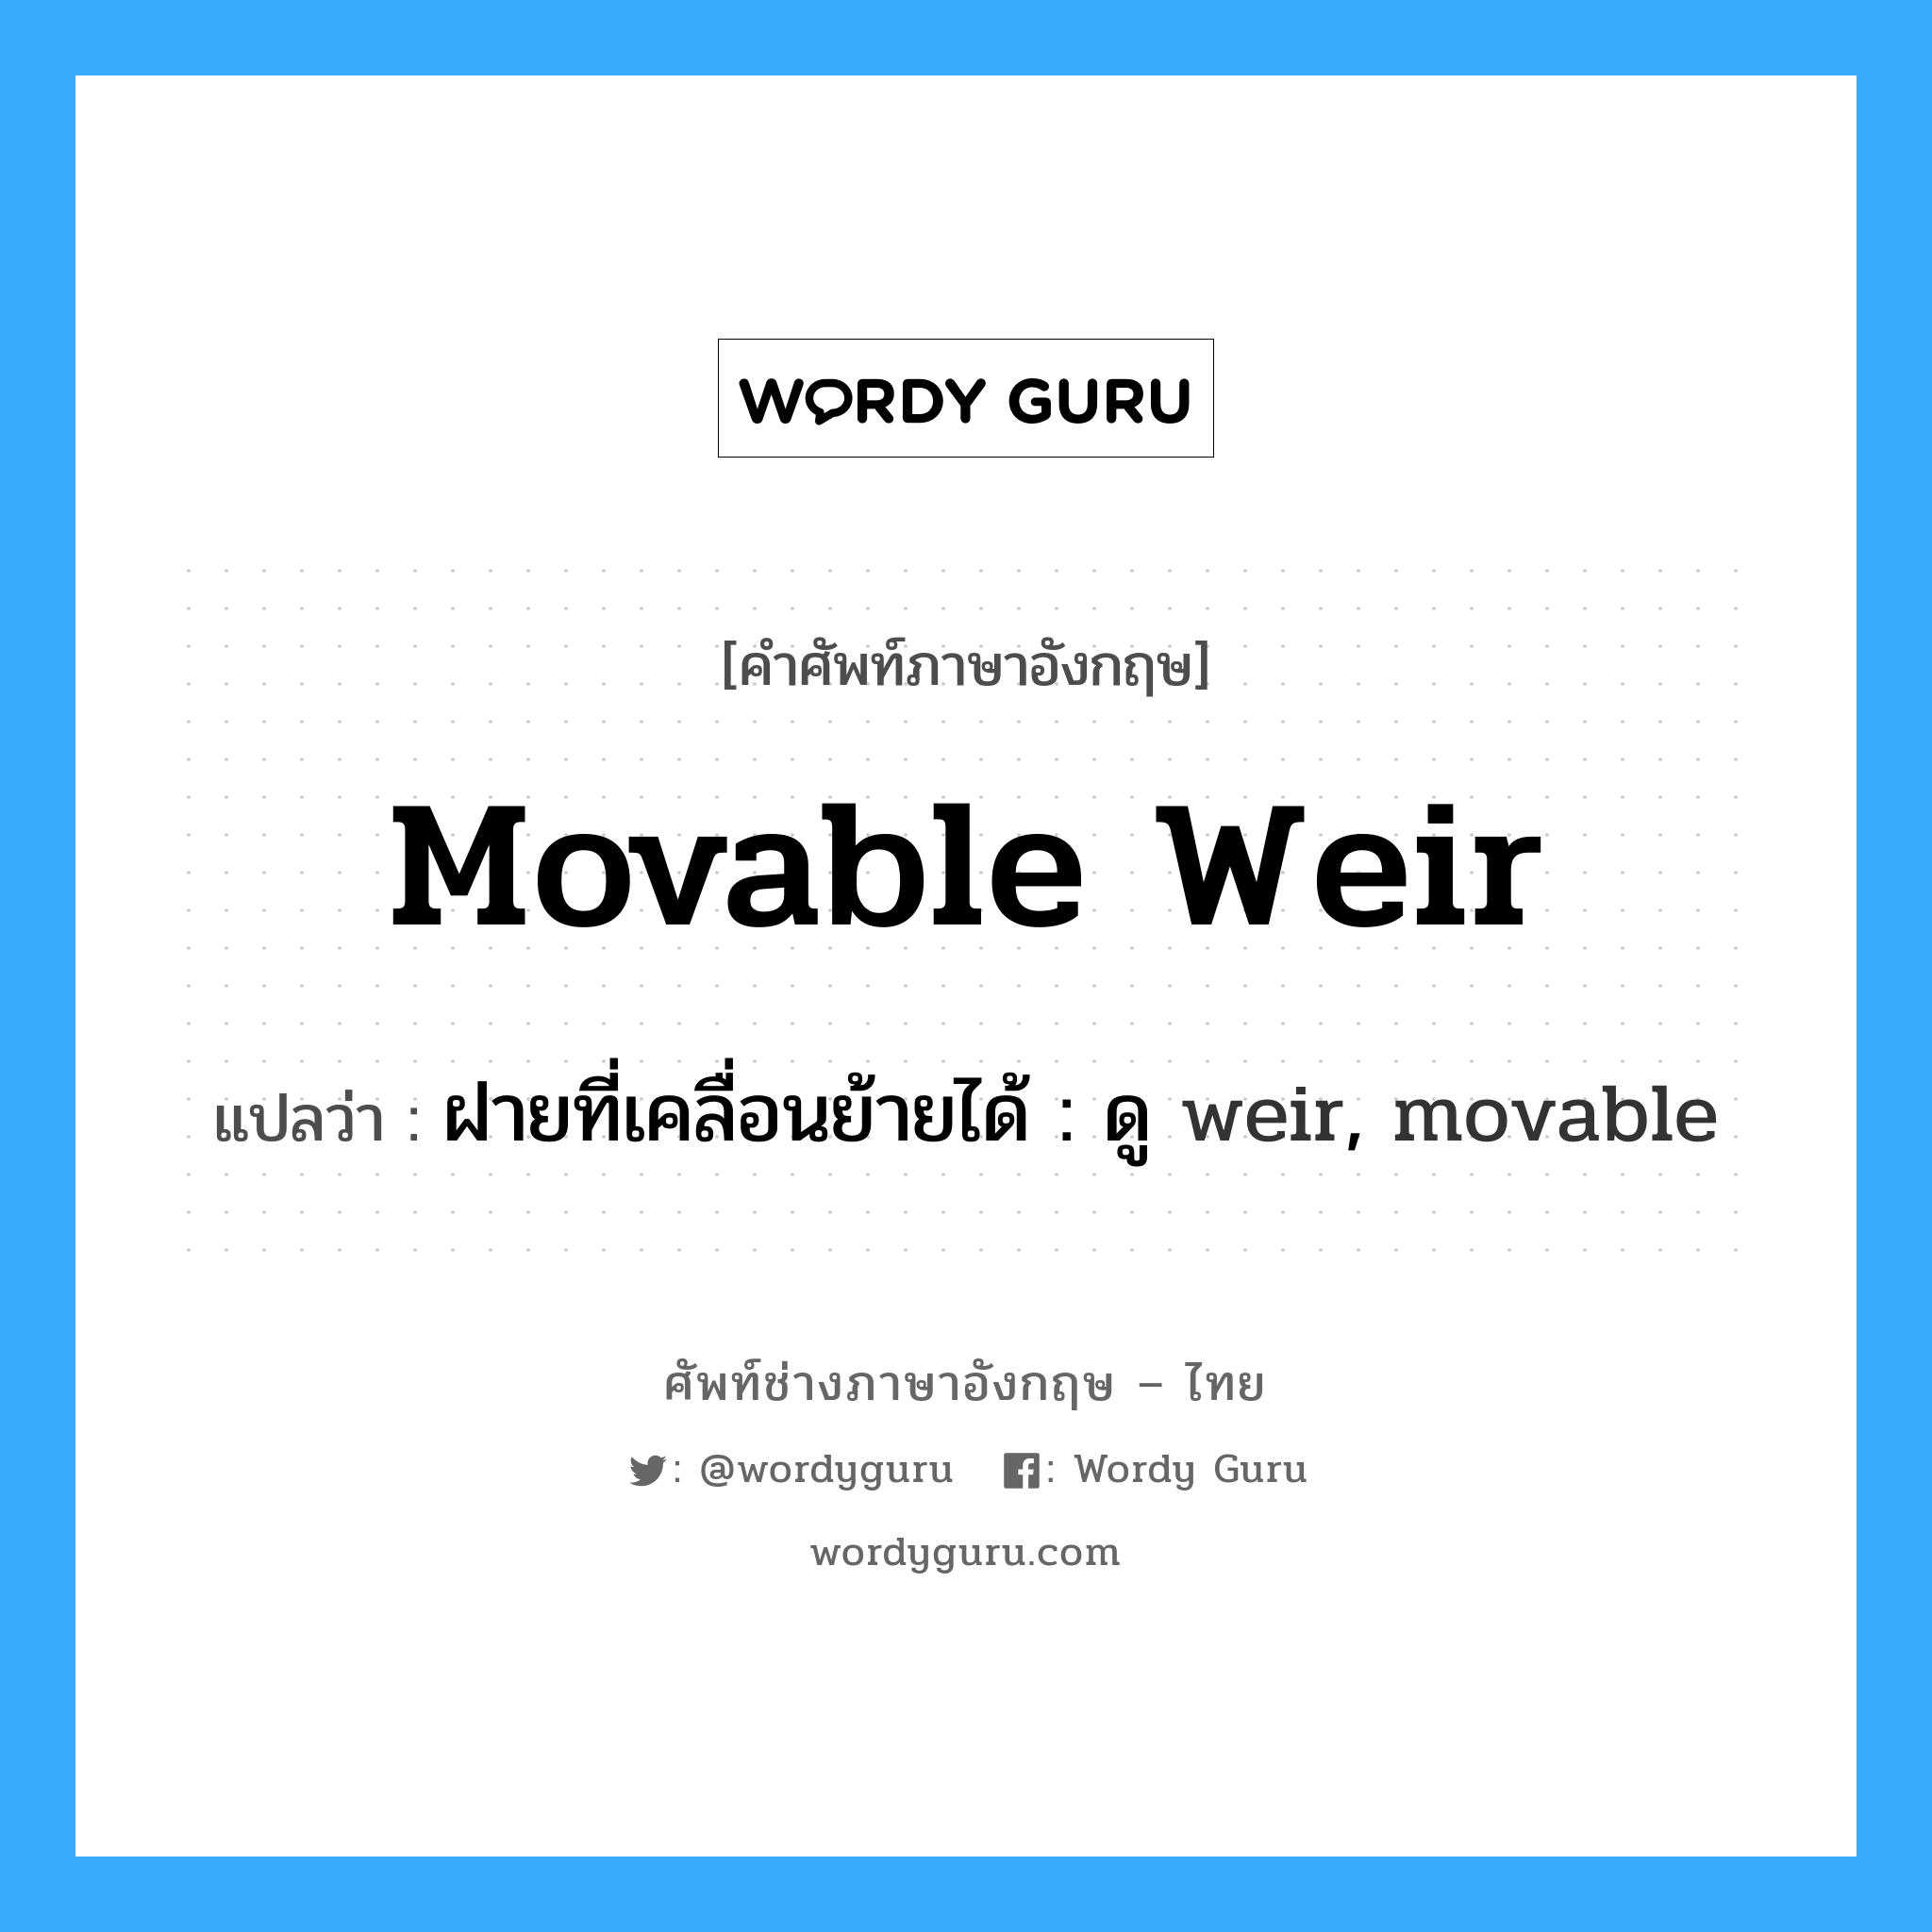 ฝายที่เคลื่อนย้ายได้ : ดู weir, movable ภาษาอังกฤษ?, คำศัพท์ช่างภาษาอังกฤษ - ไทย ฝายที่เคลื่อนย้ายได้ : ดู weir, movable คำศัพท์ภาษาอังกฤษ ฝายที่เคลื่อนย้ายได้ : ดู weir, movable แปลว่า movable weir